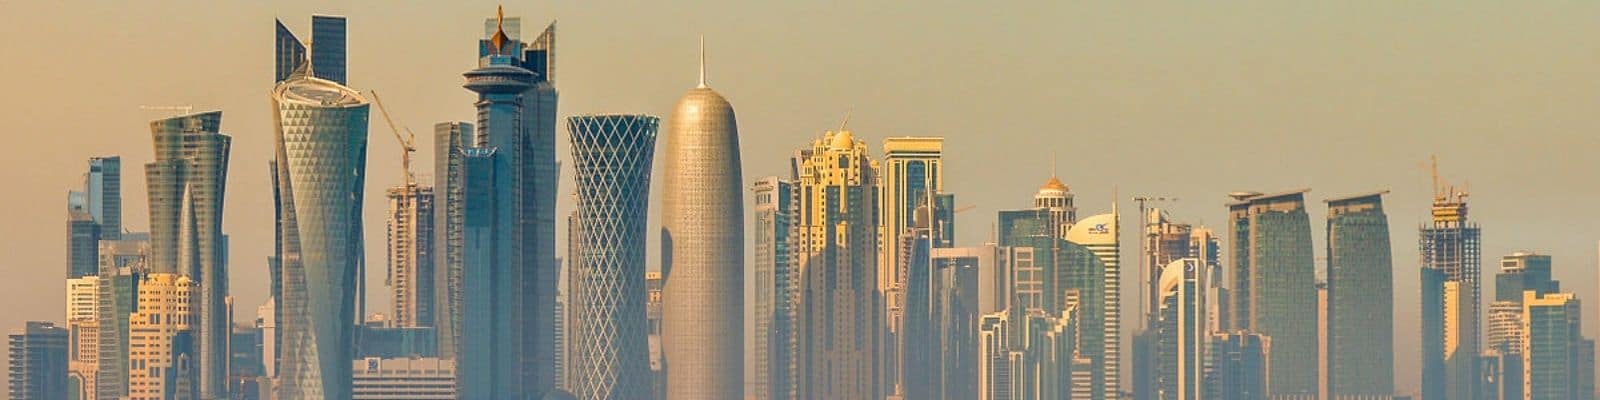 digital marketing courses in Qatar